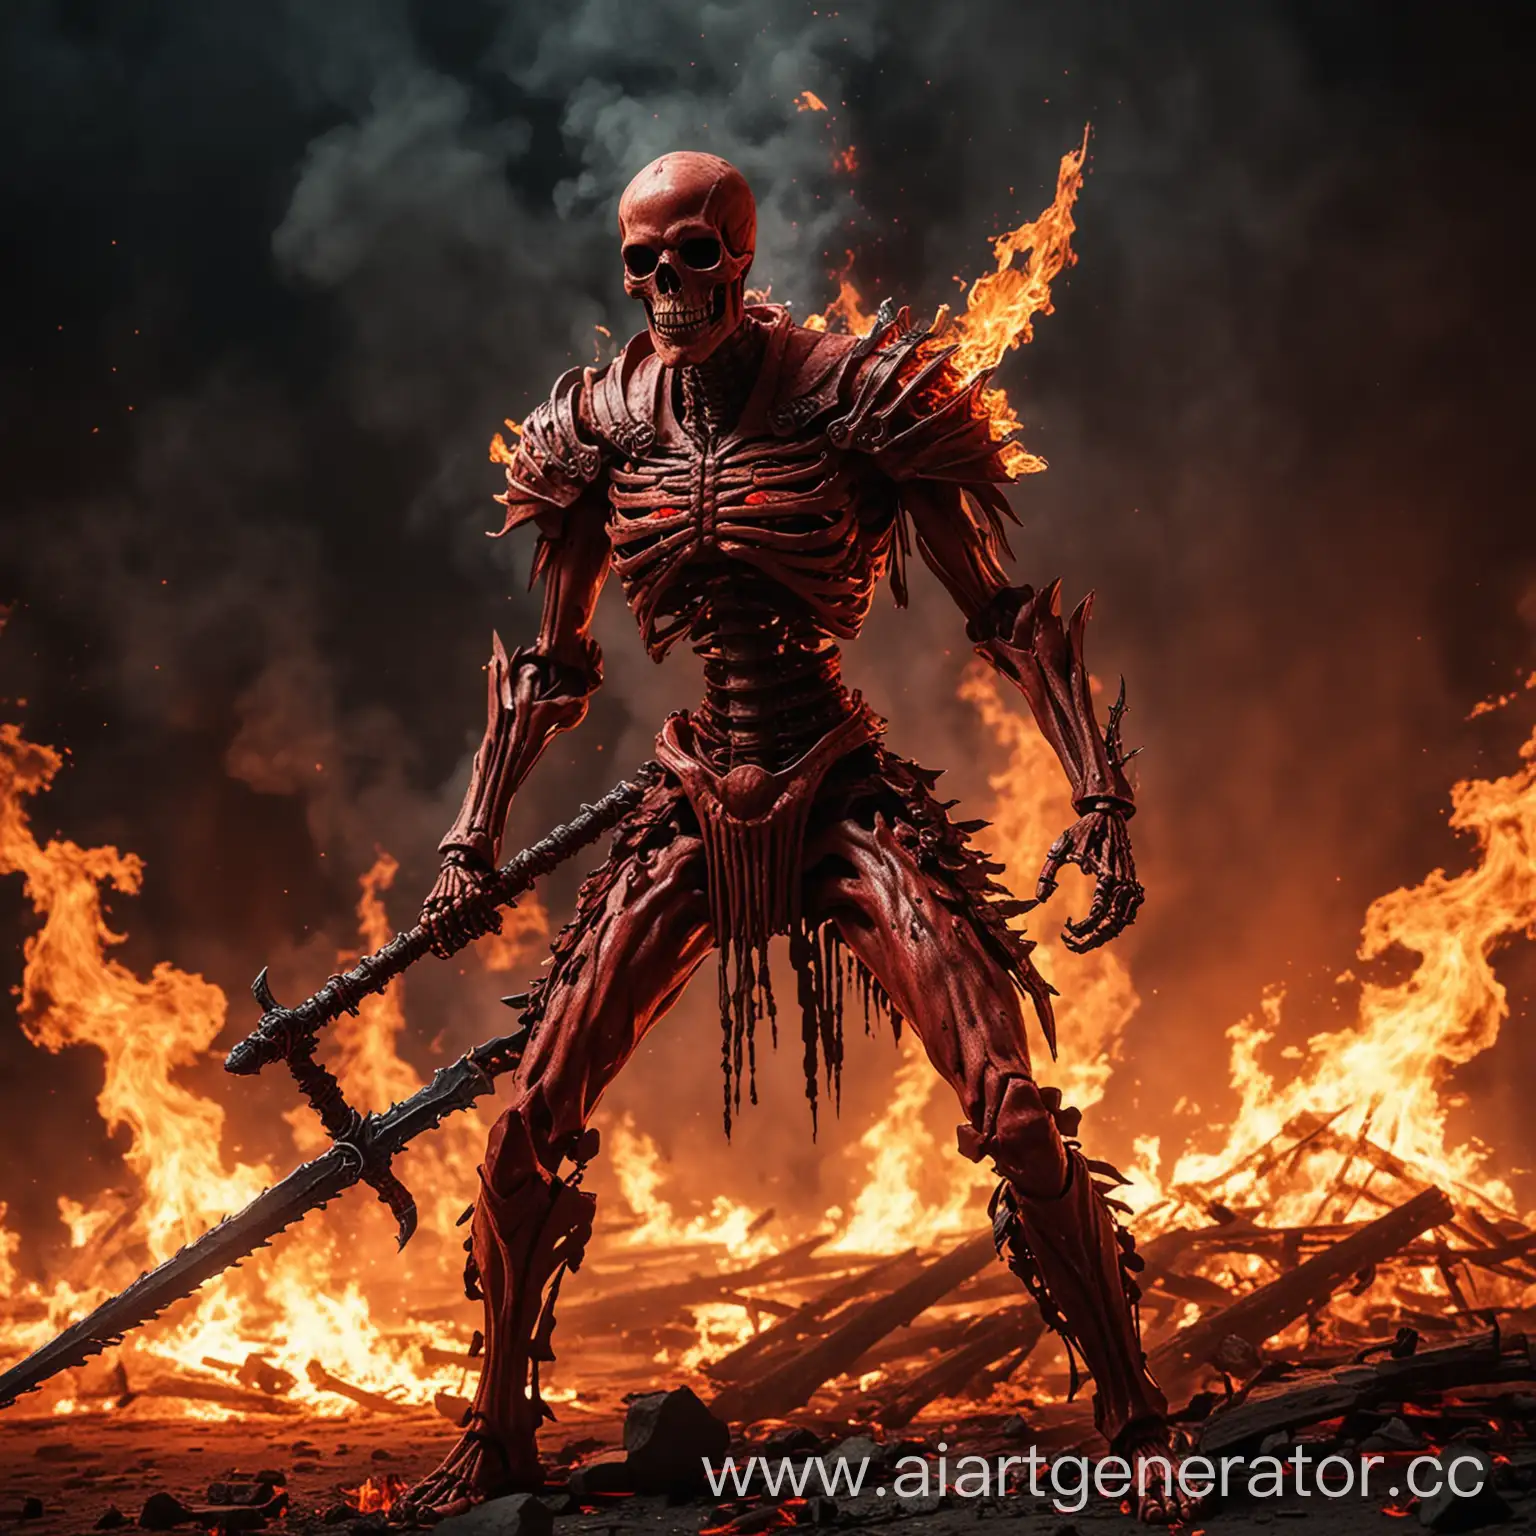 Fiery-Battle-Red-Skeleton-Wielding-Flaming-Sword